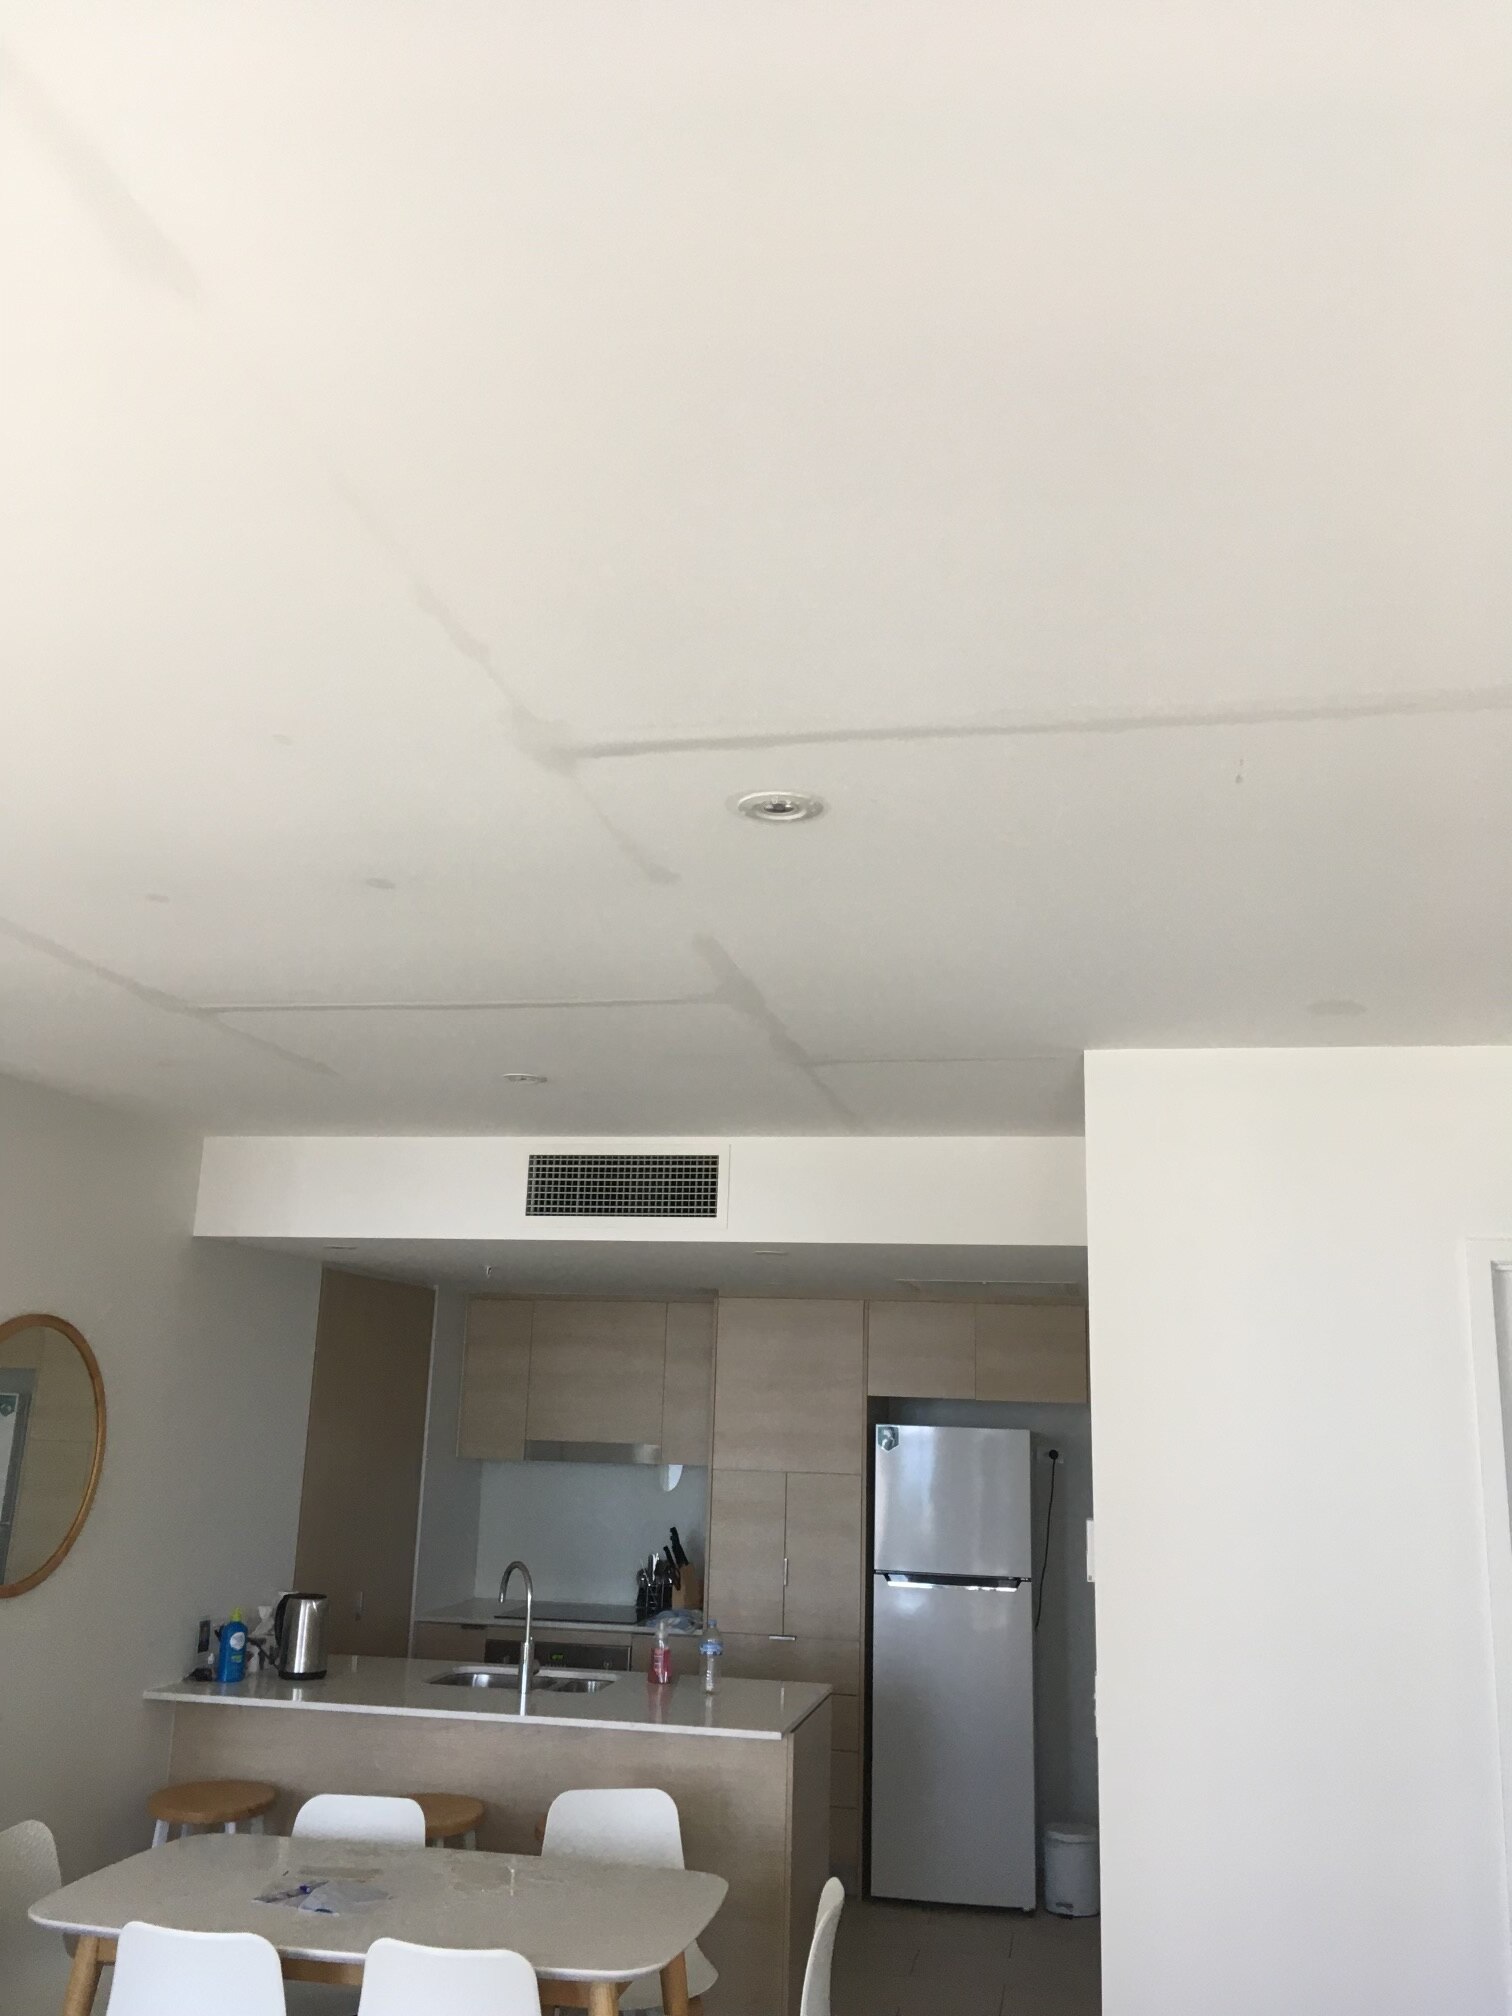 Las líneas en el techo muestran una fuga de agua desde el apartamento de arriba.